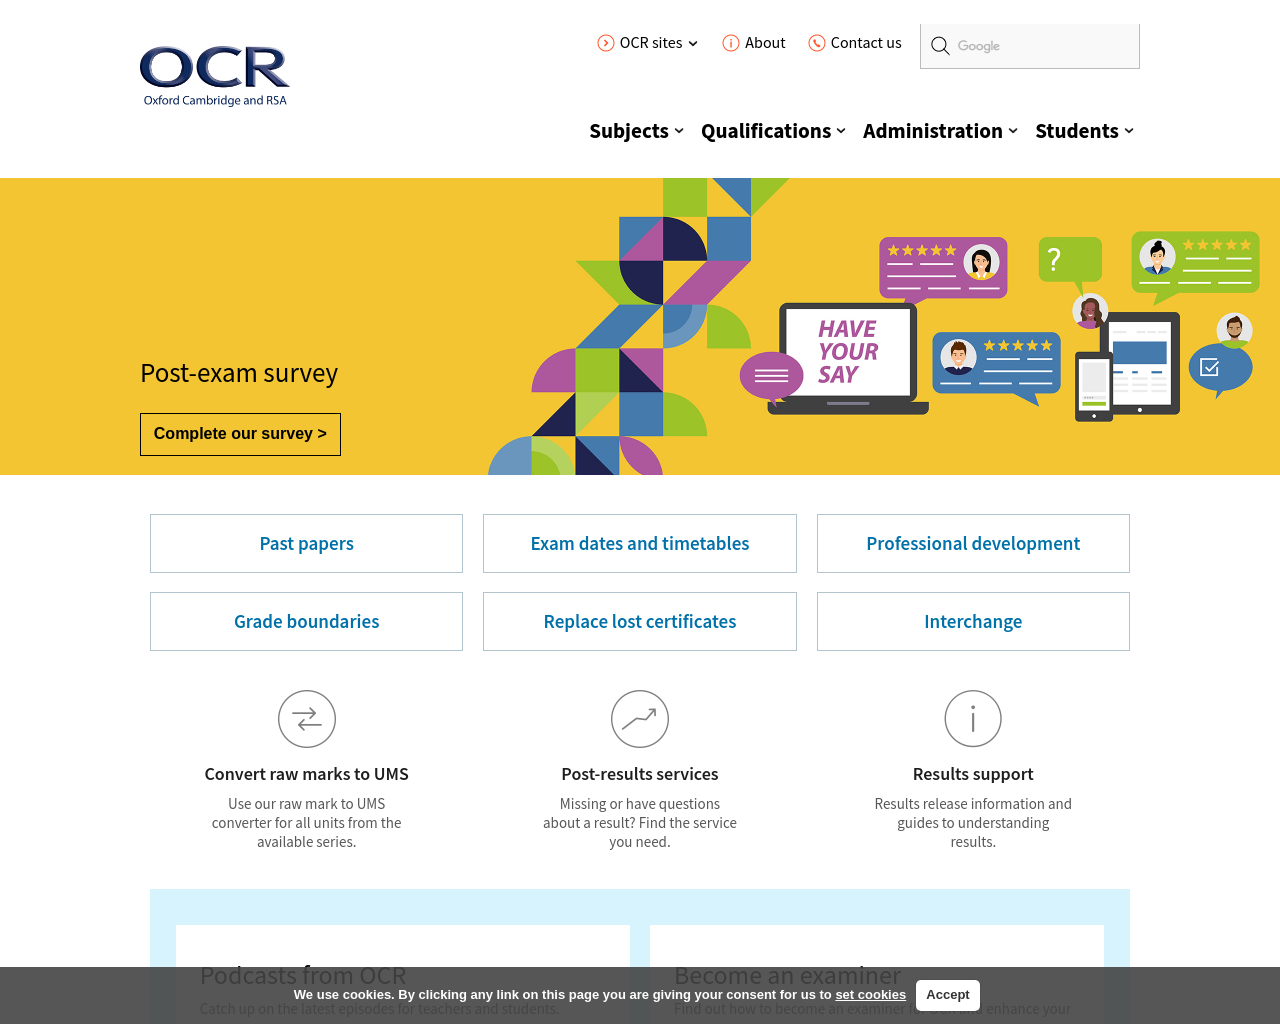 ocr.org.uk